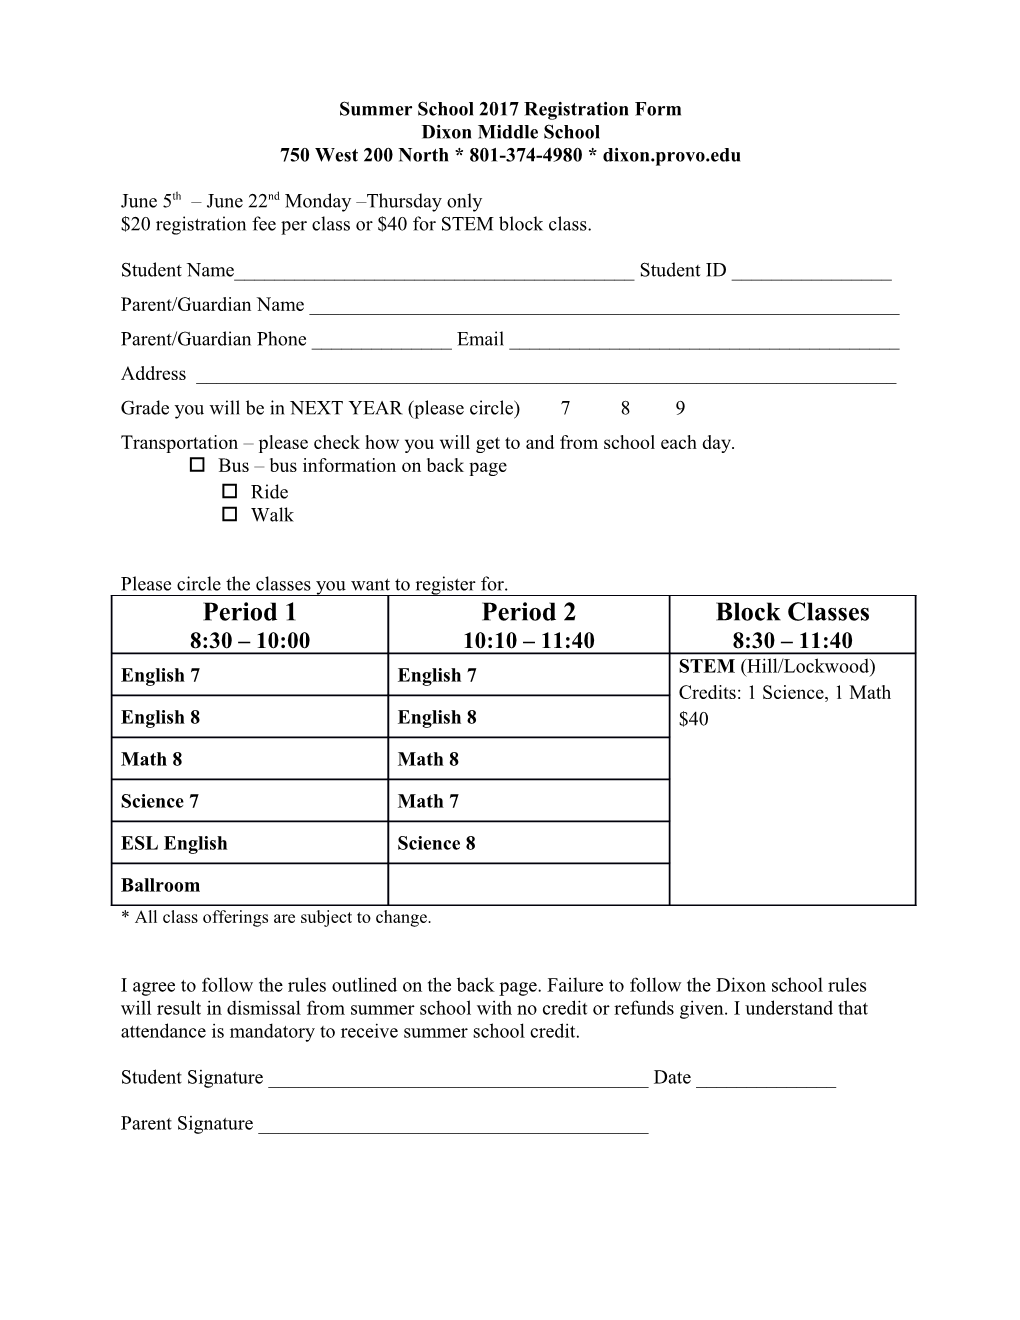 Summer School 2015 Registration Form